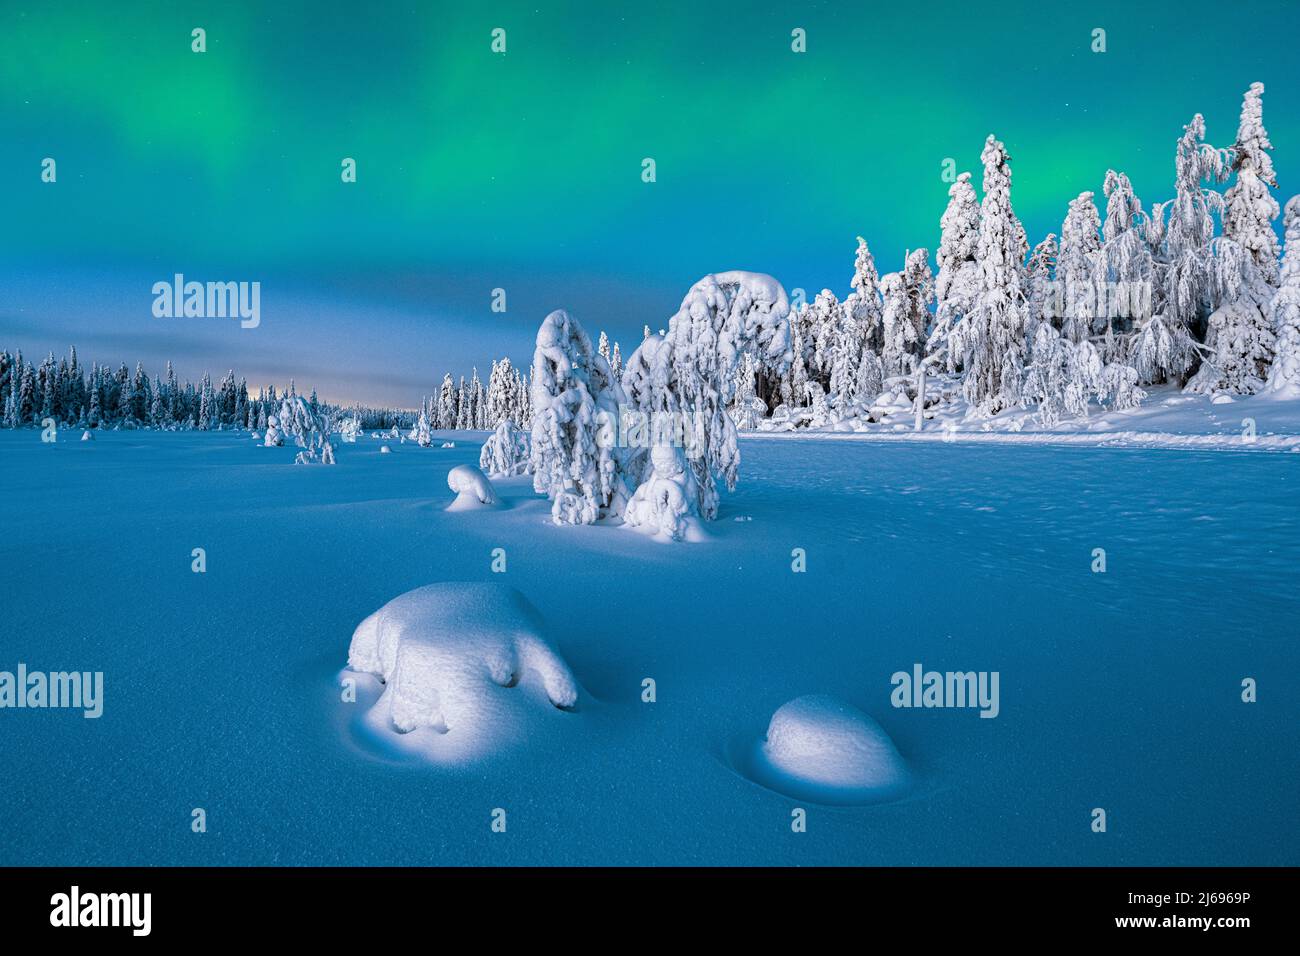 Aurores boréales (Aurora Borealis) au-dessus d'épinettes congelées couvertes de neige au crépuscule, Laponie, Finlande, Europe Banque D'Images